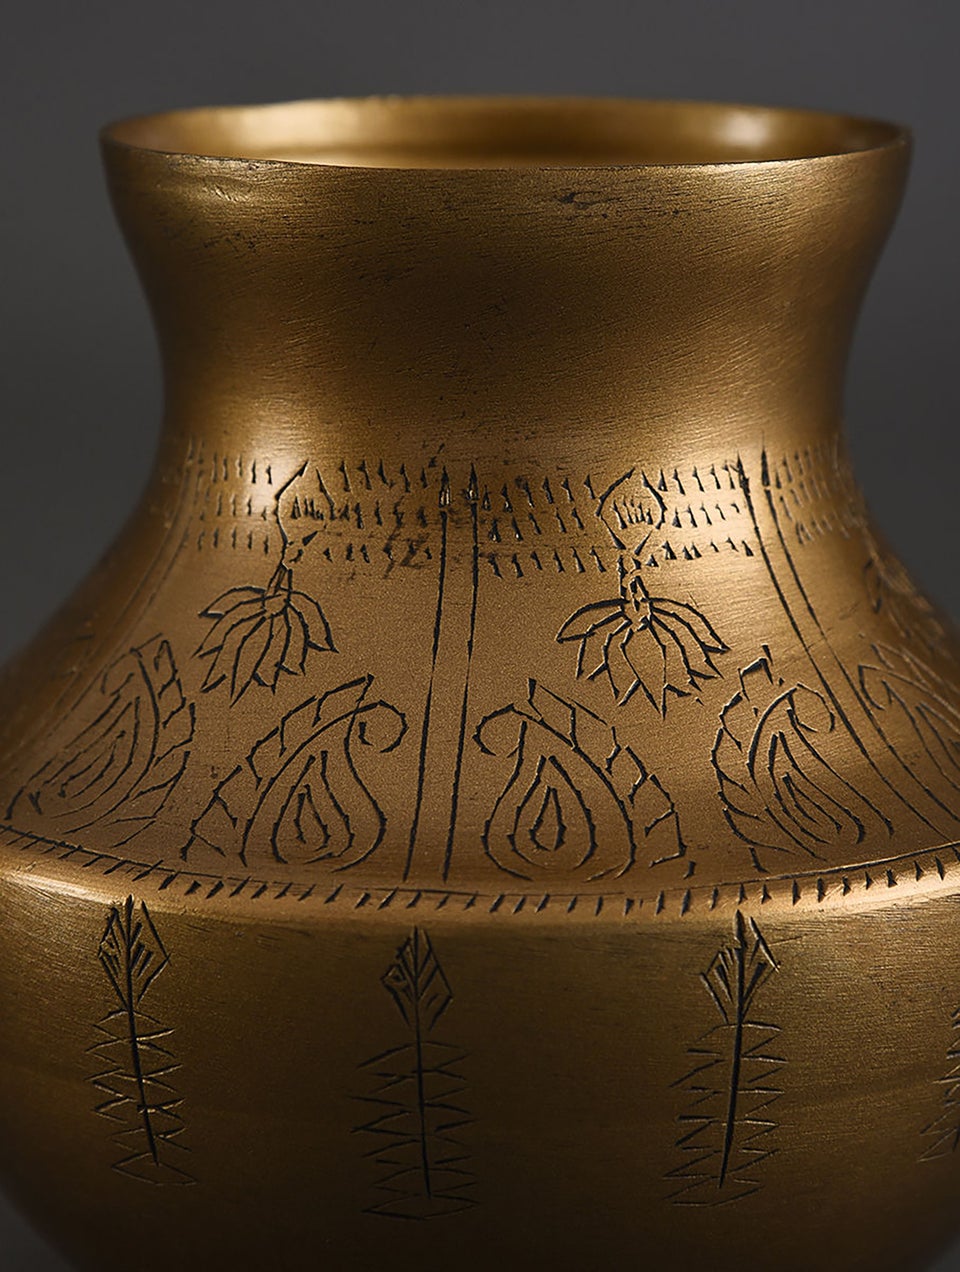 Hand-Engraved Golden Lota